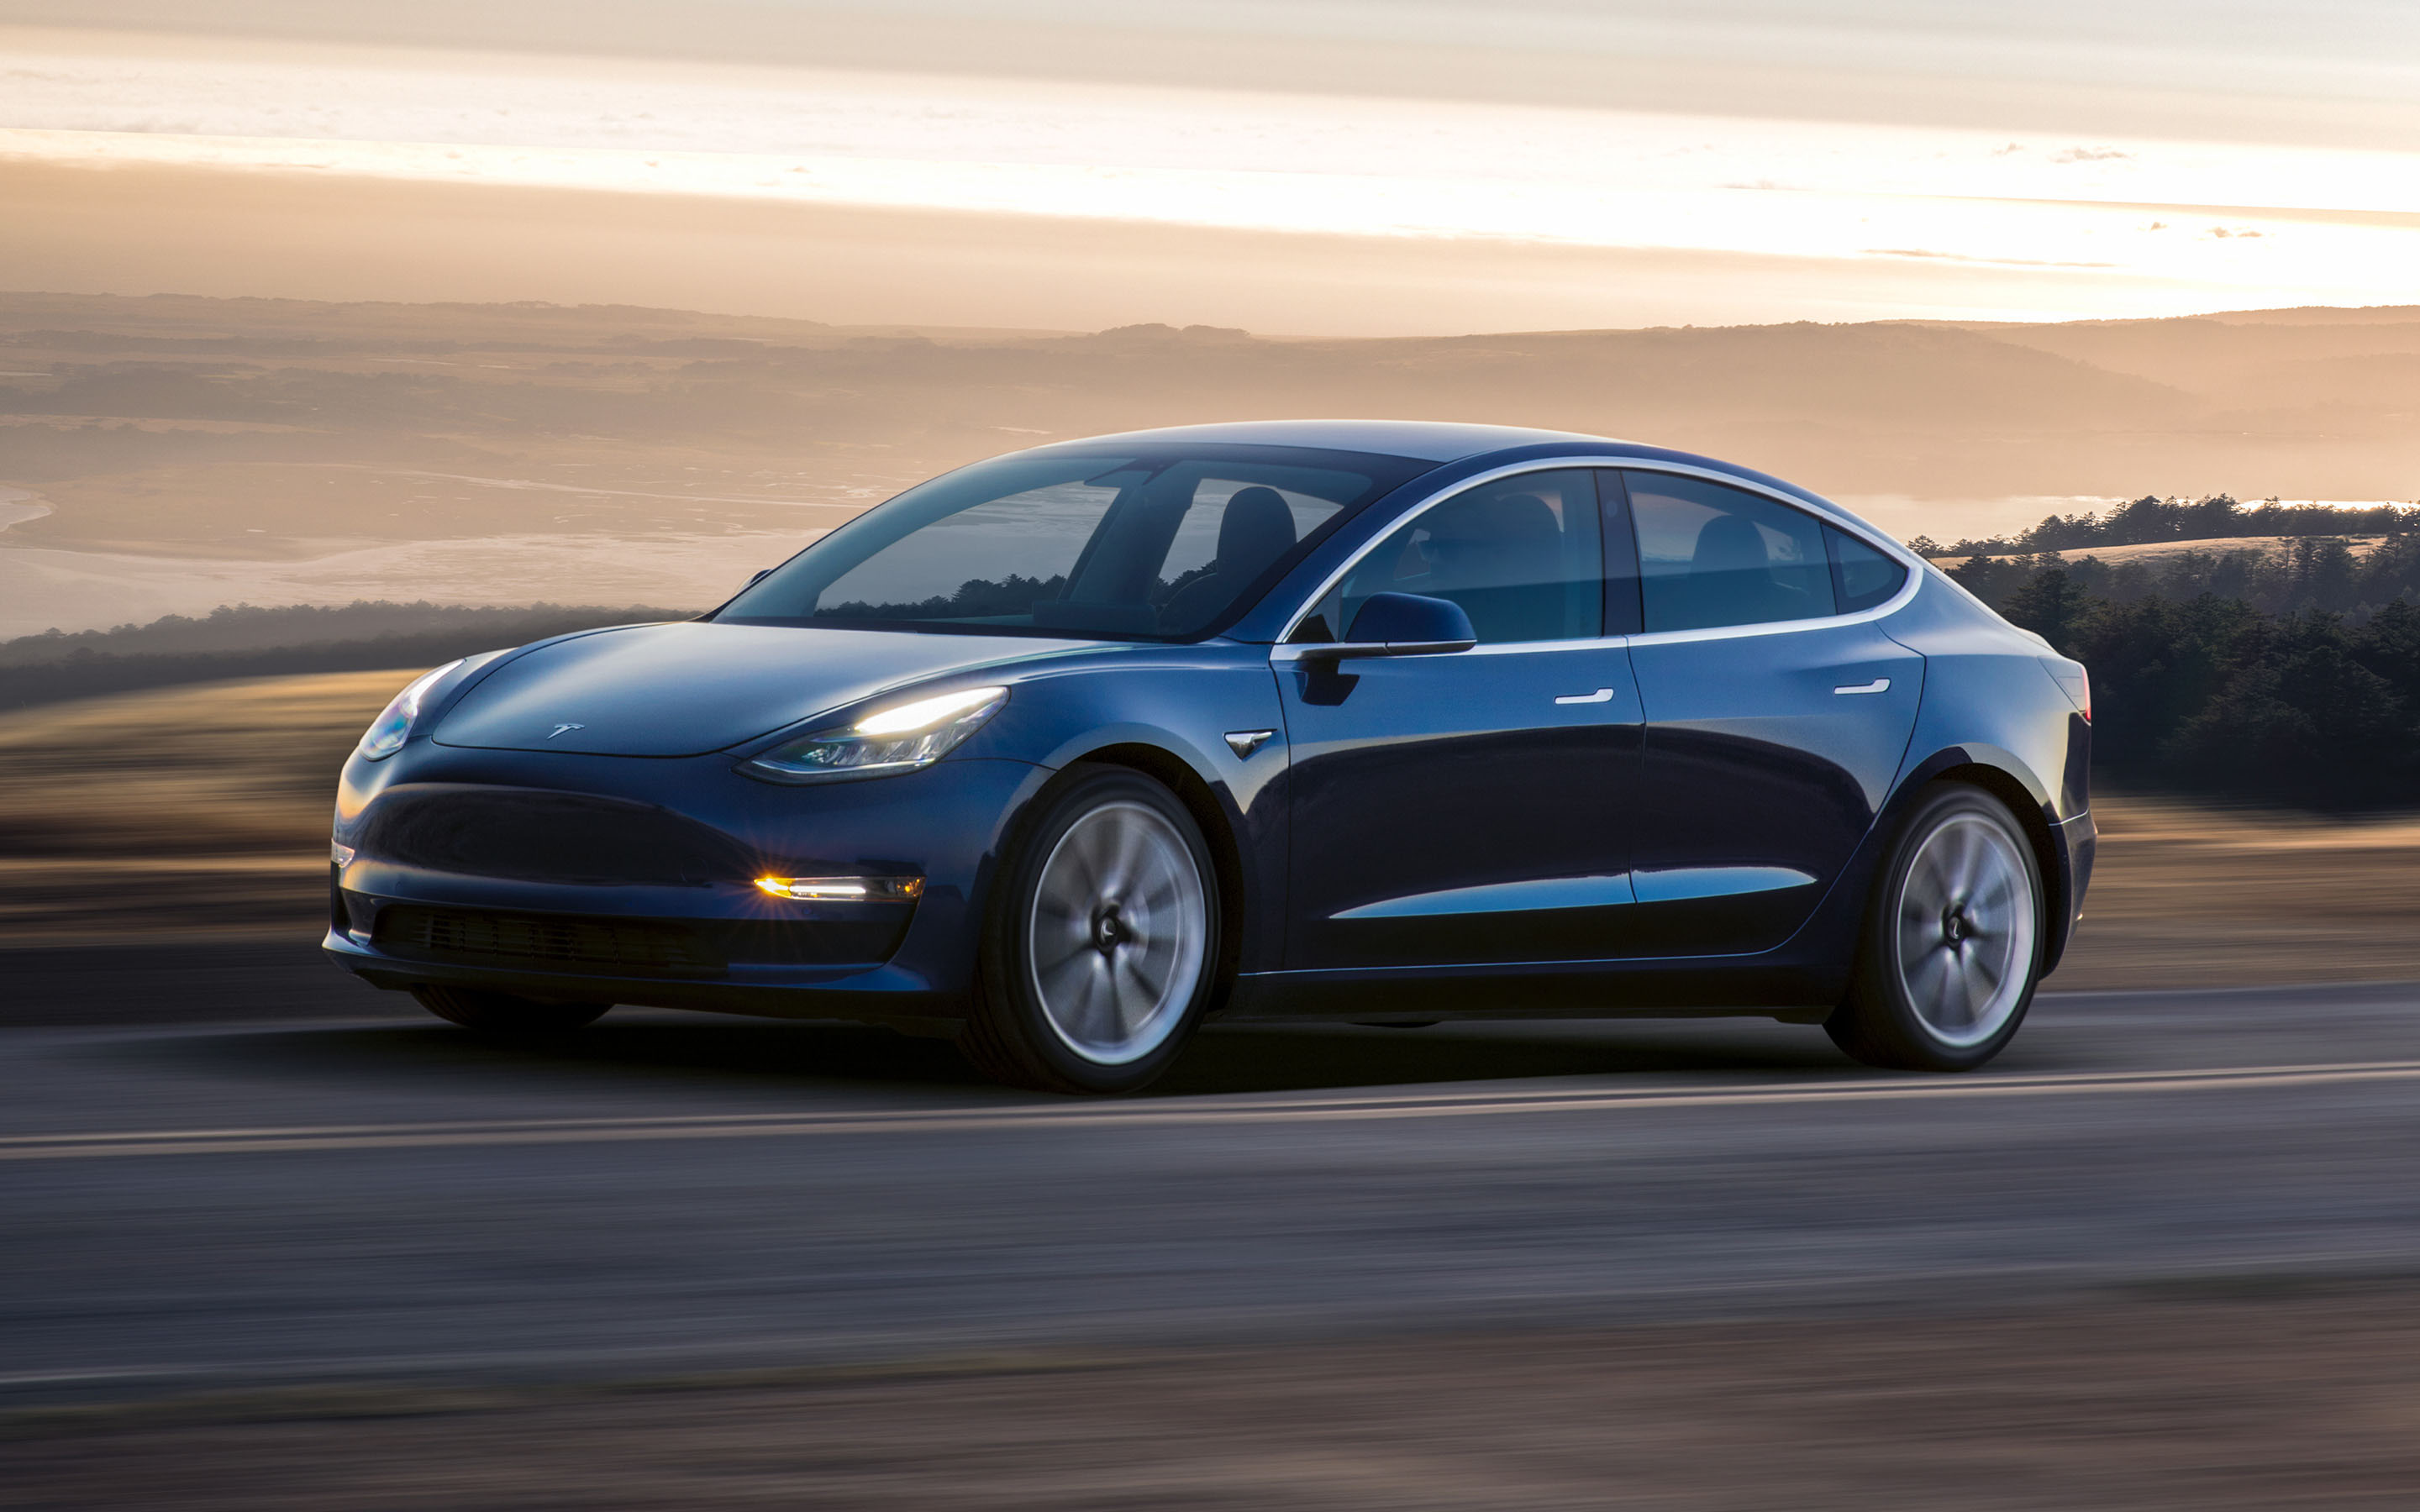 Zorlu Enerji, Tesla kiralama platformu kuruyor